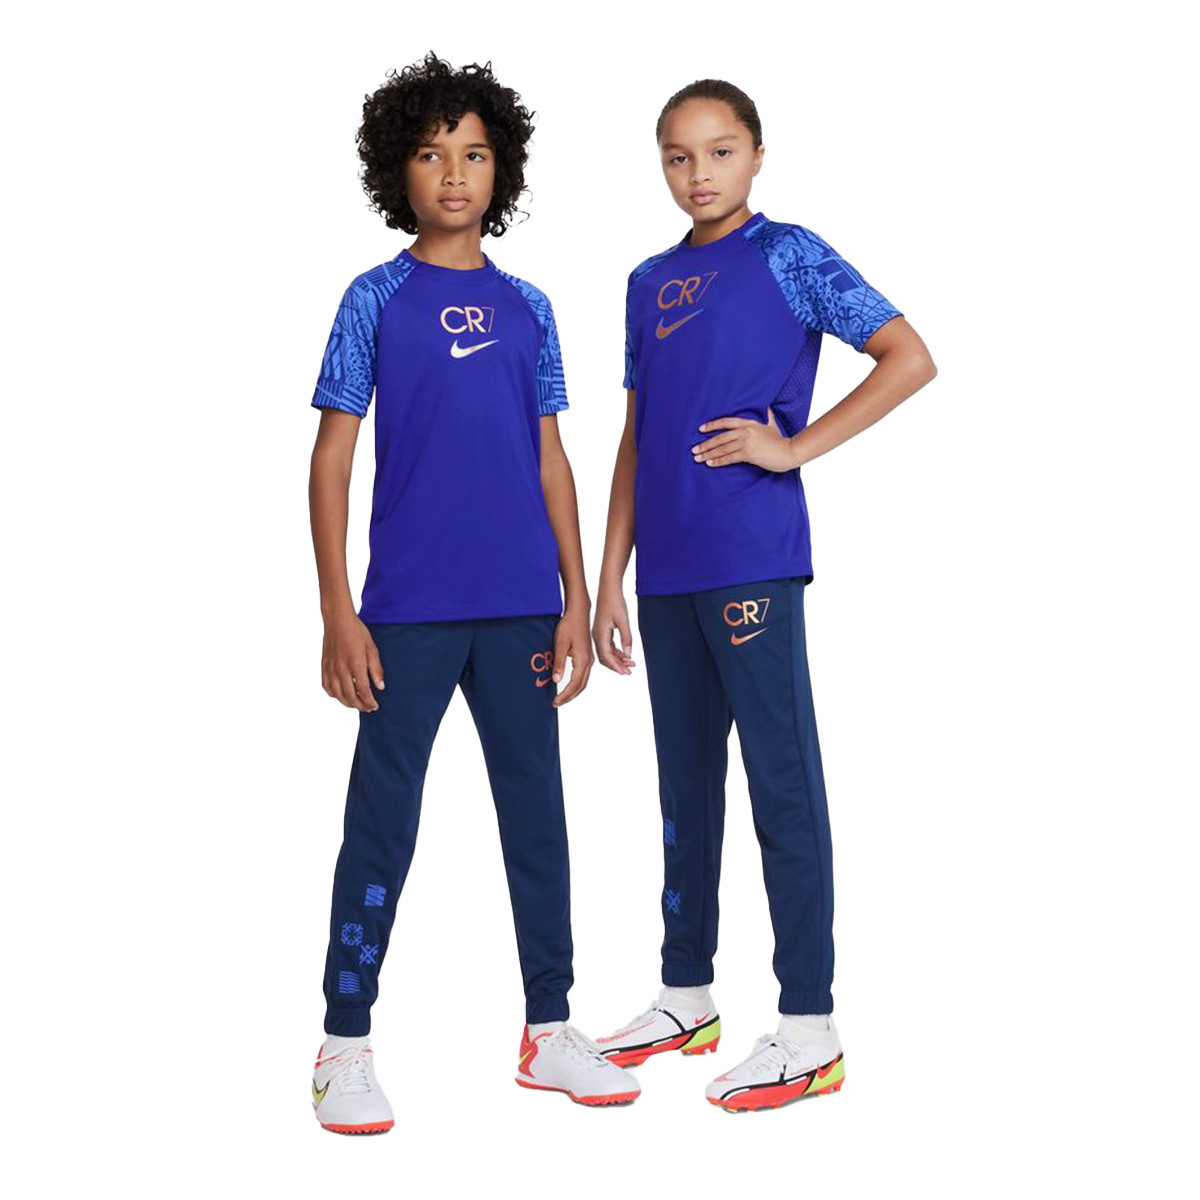 Camiseta Nike Niño Concord - Fútbol Emotion